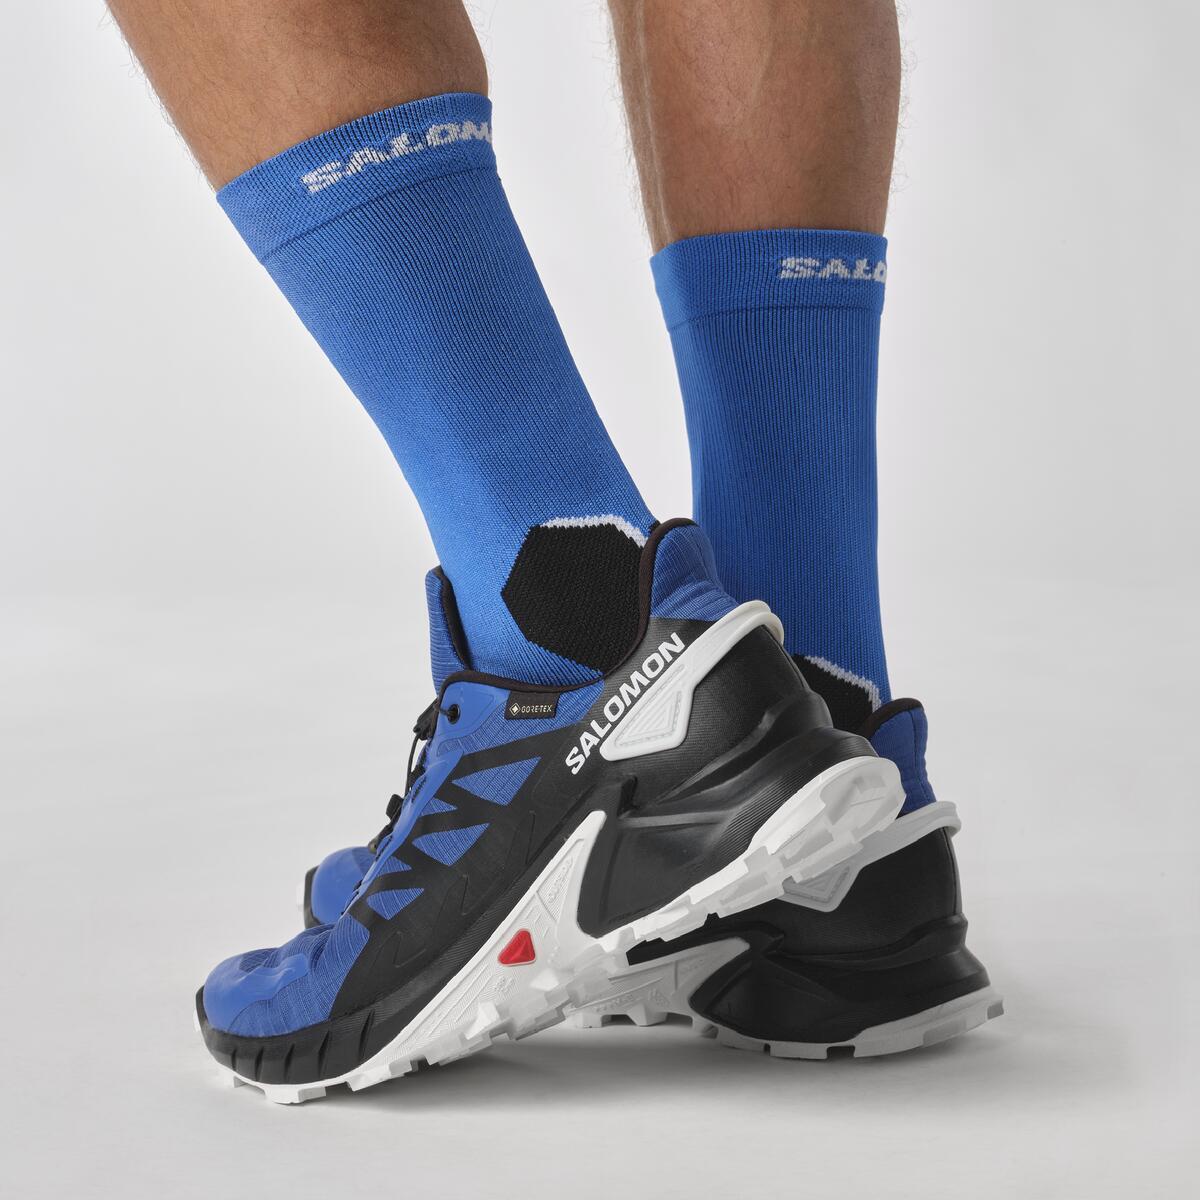 Supercross 4 Gore-Tex - Erkek Koşu Ayakkabısı | Salomon